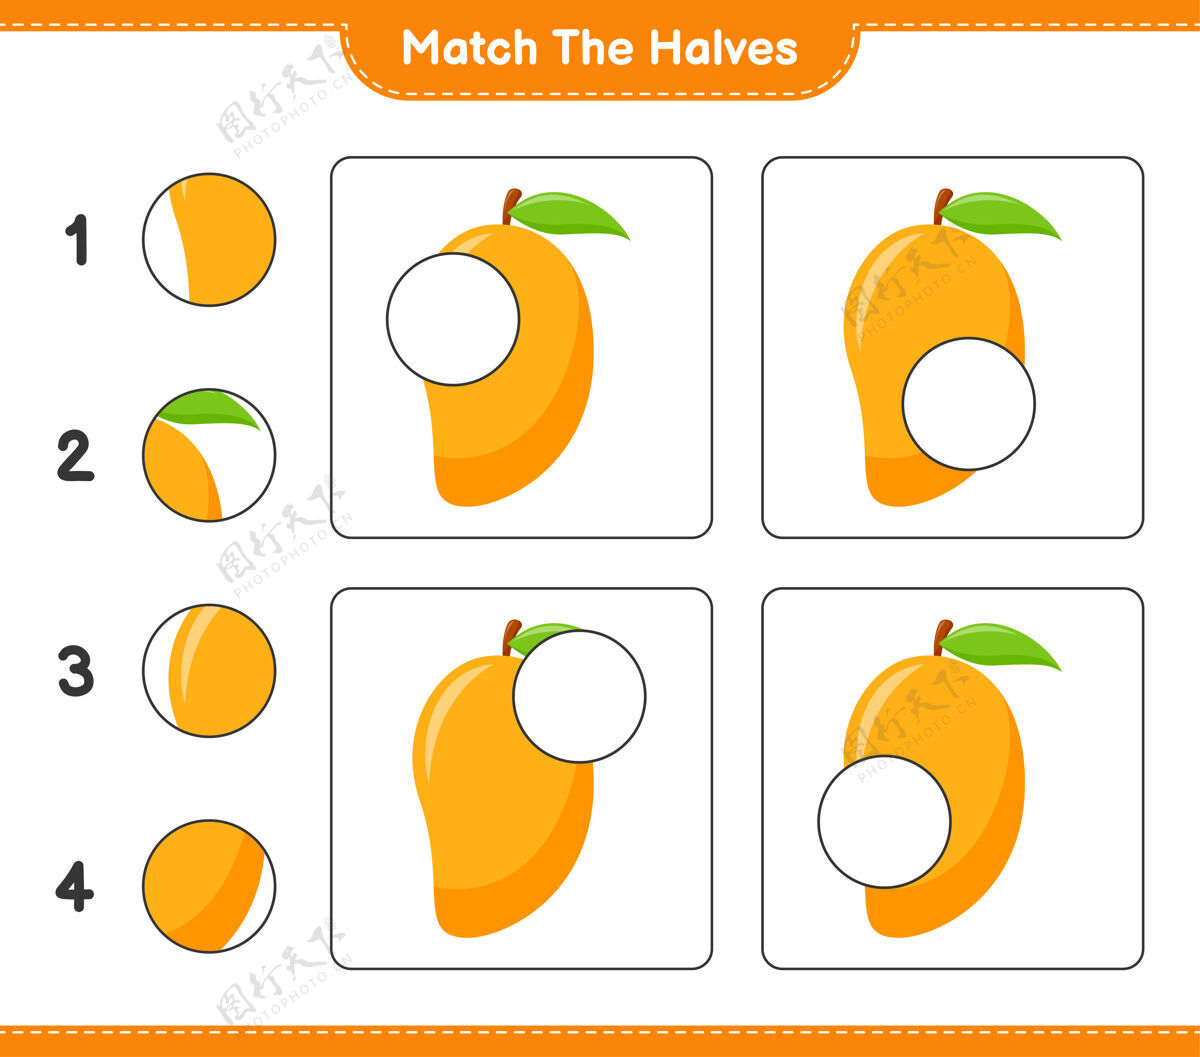 学习匹配对半匹配一半芒果教育儿童游戏 可打印工作表匹配游戏教育表格